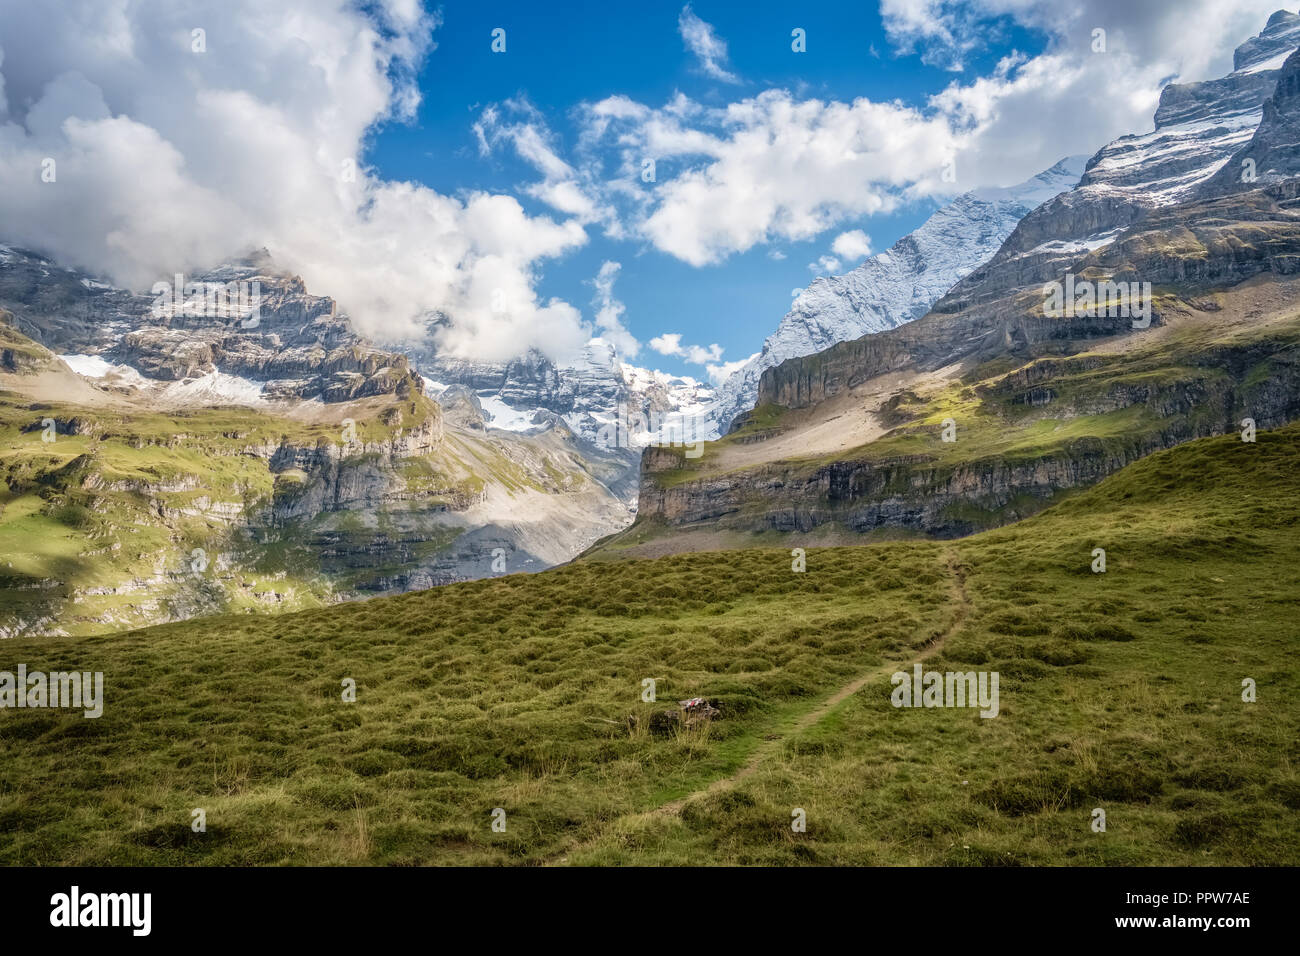 Spektakuläre Aussicht in Kiental während walkink ab Griesalp zu Obere Bundalp. Kiental ist ein Dorf und Tal in den Berner Alpen (Schweiz) Stockfoto